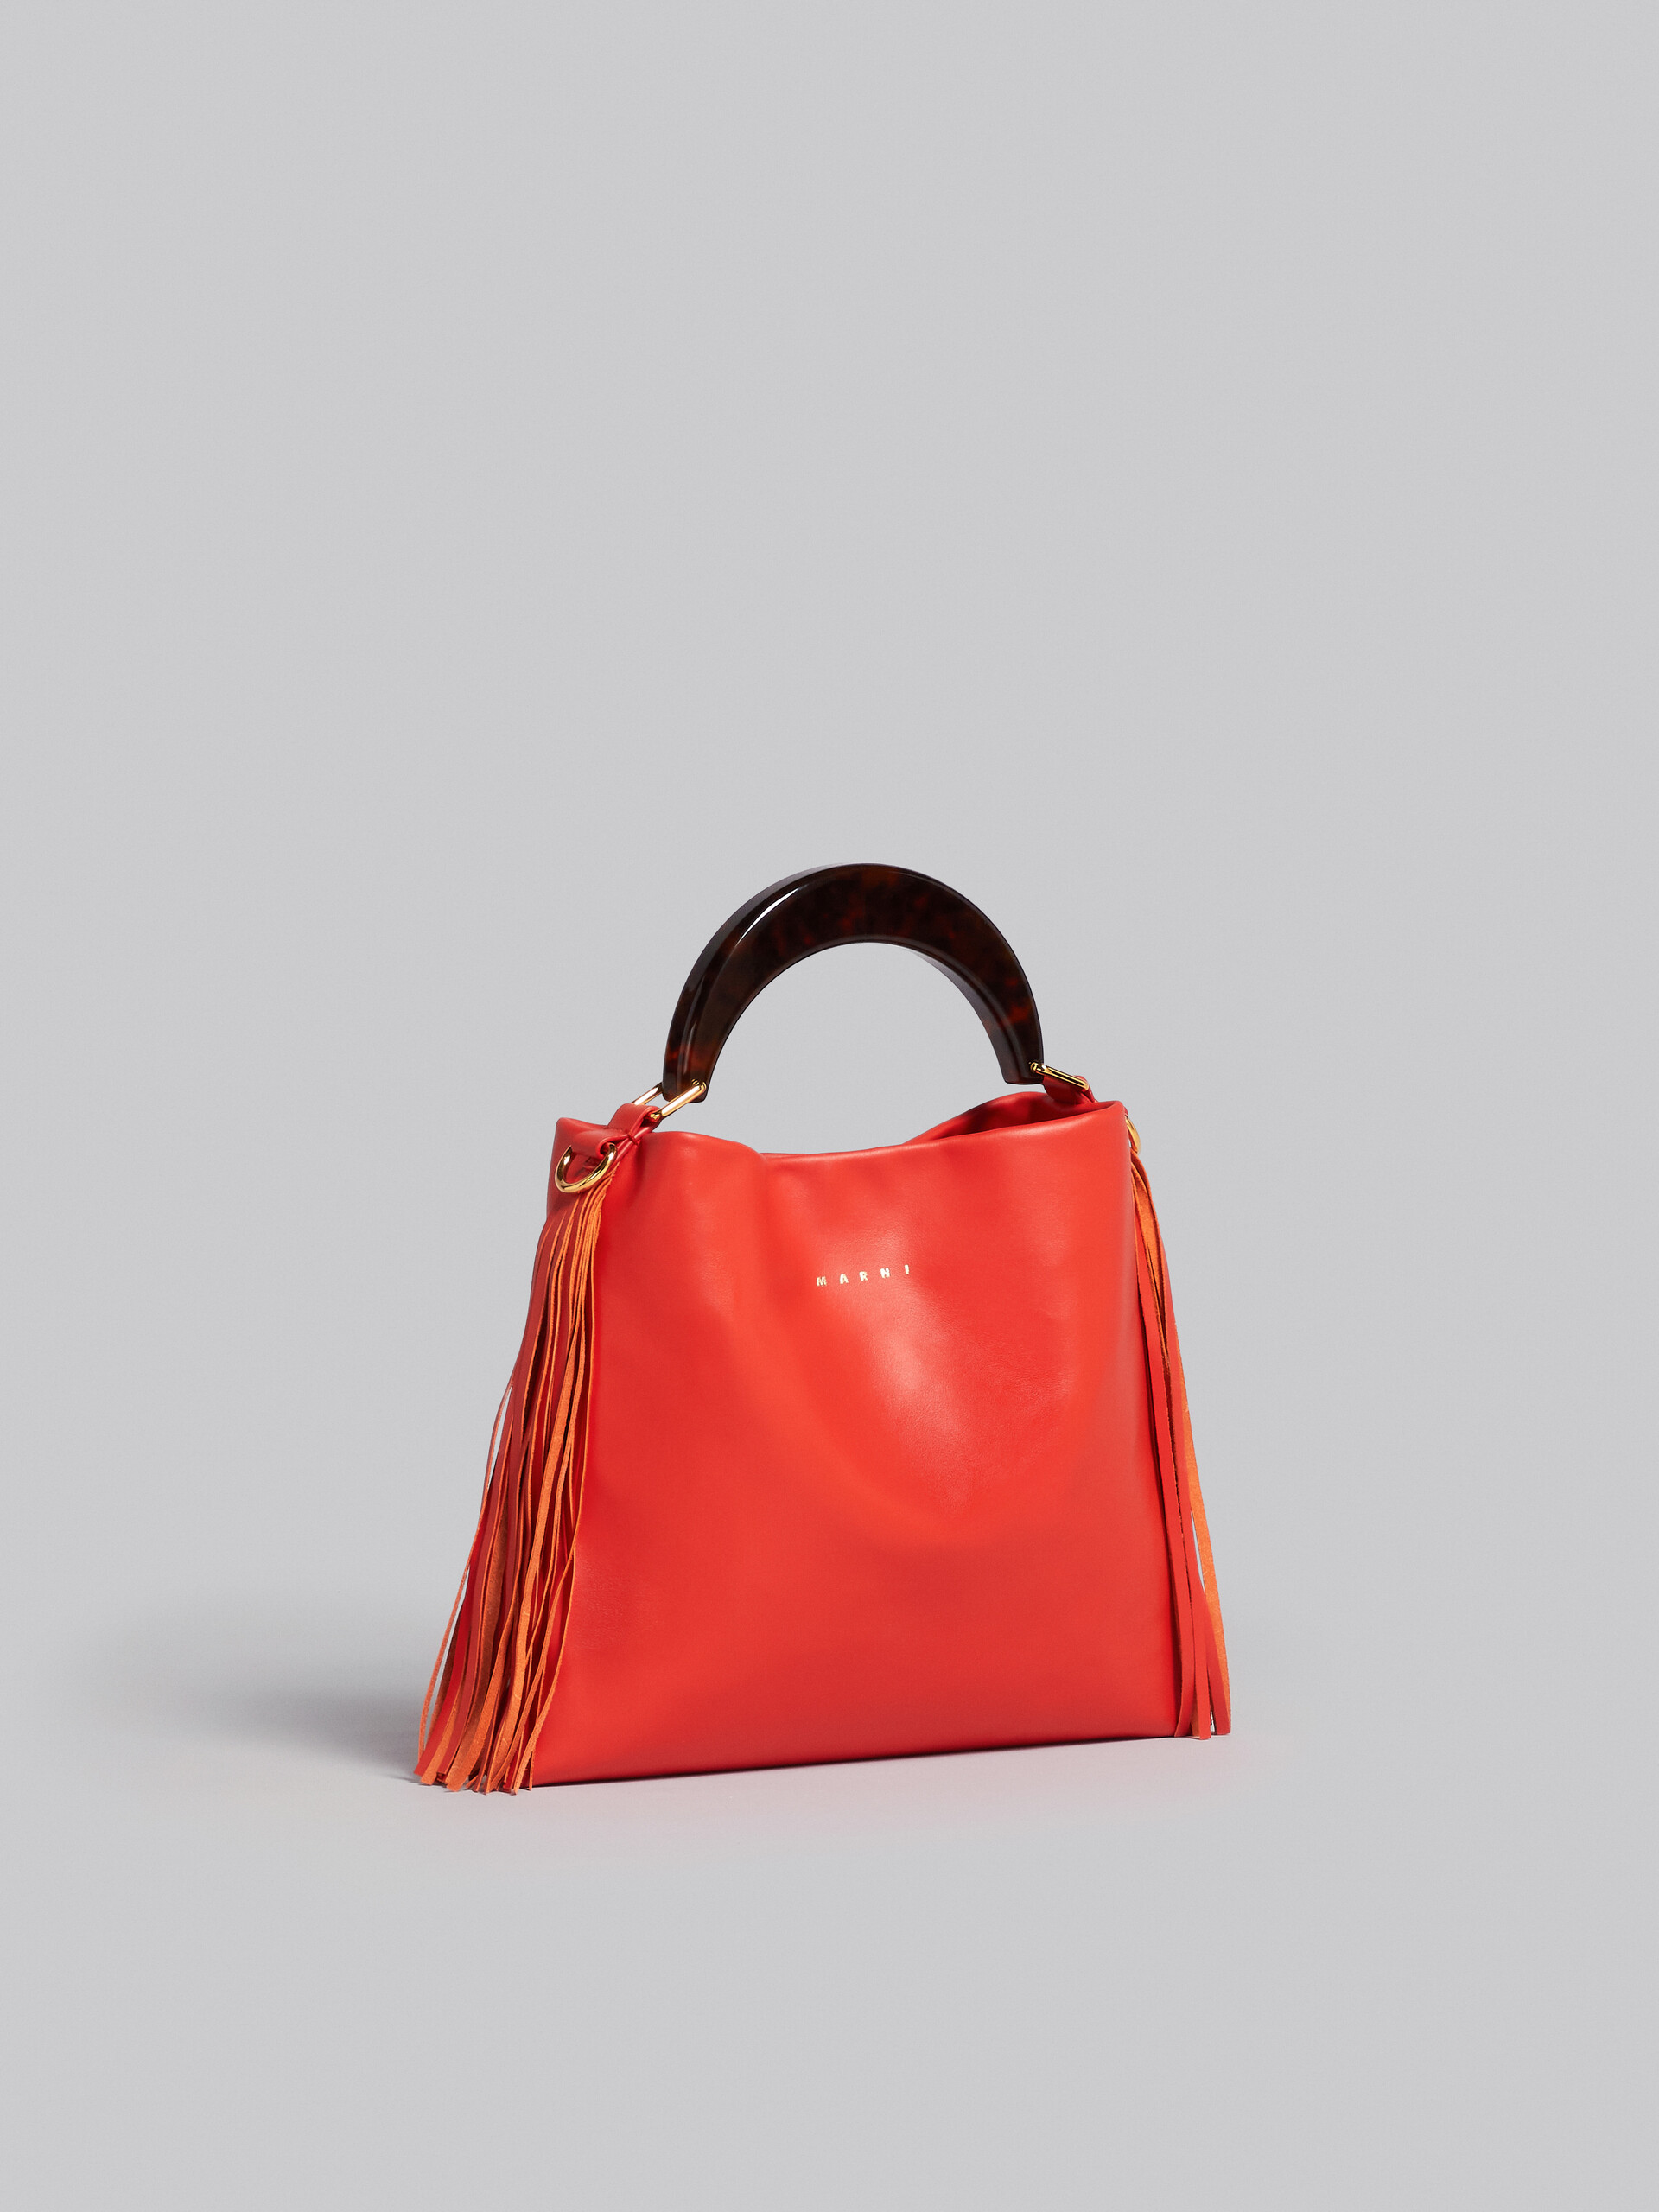 Venice Small Bag in orange leather with fringes - Shoulder Bag - Image 6